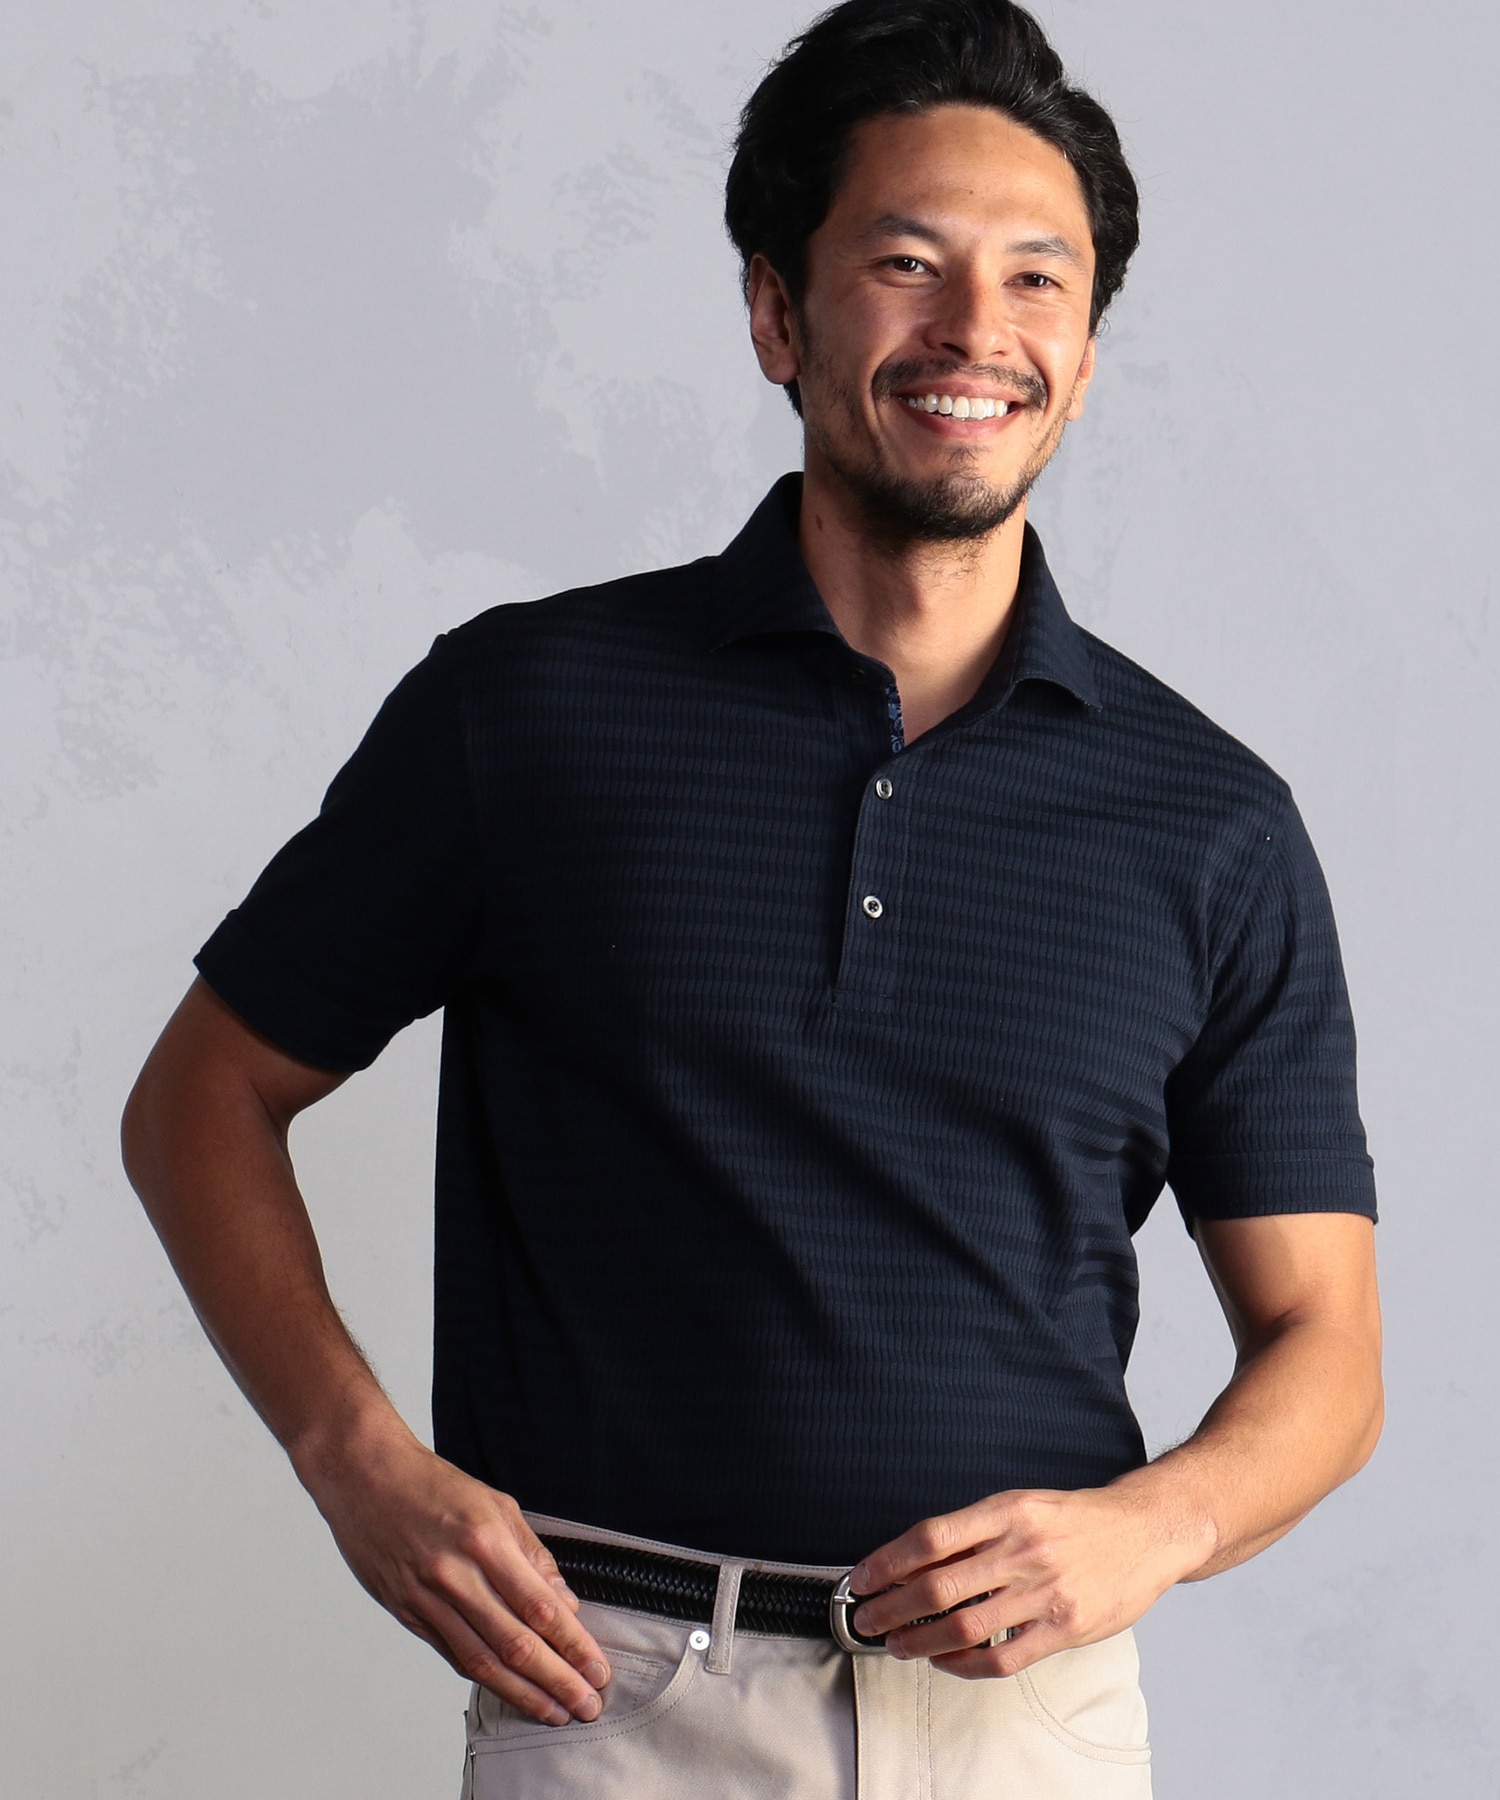 リンクス柄アイスコットンポロシャツ メンズファッション通販 Men S Bigi Online Store メンズビギ オンラインストア